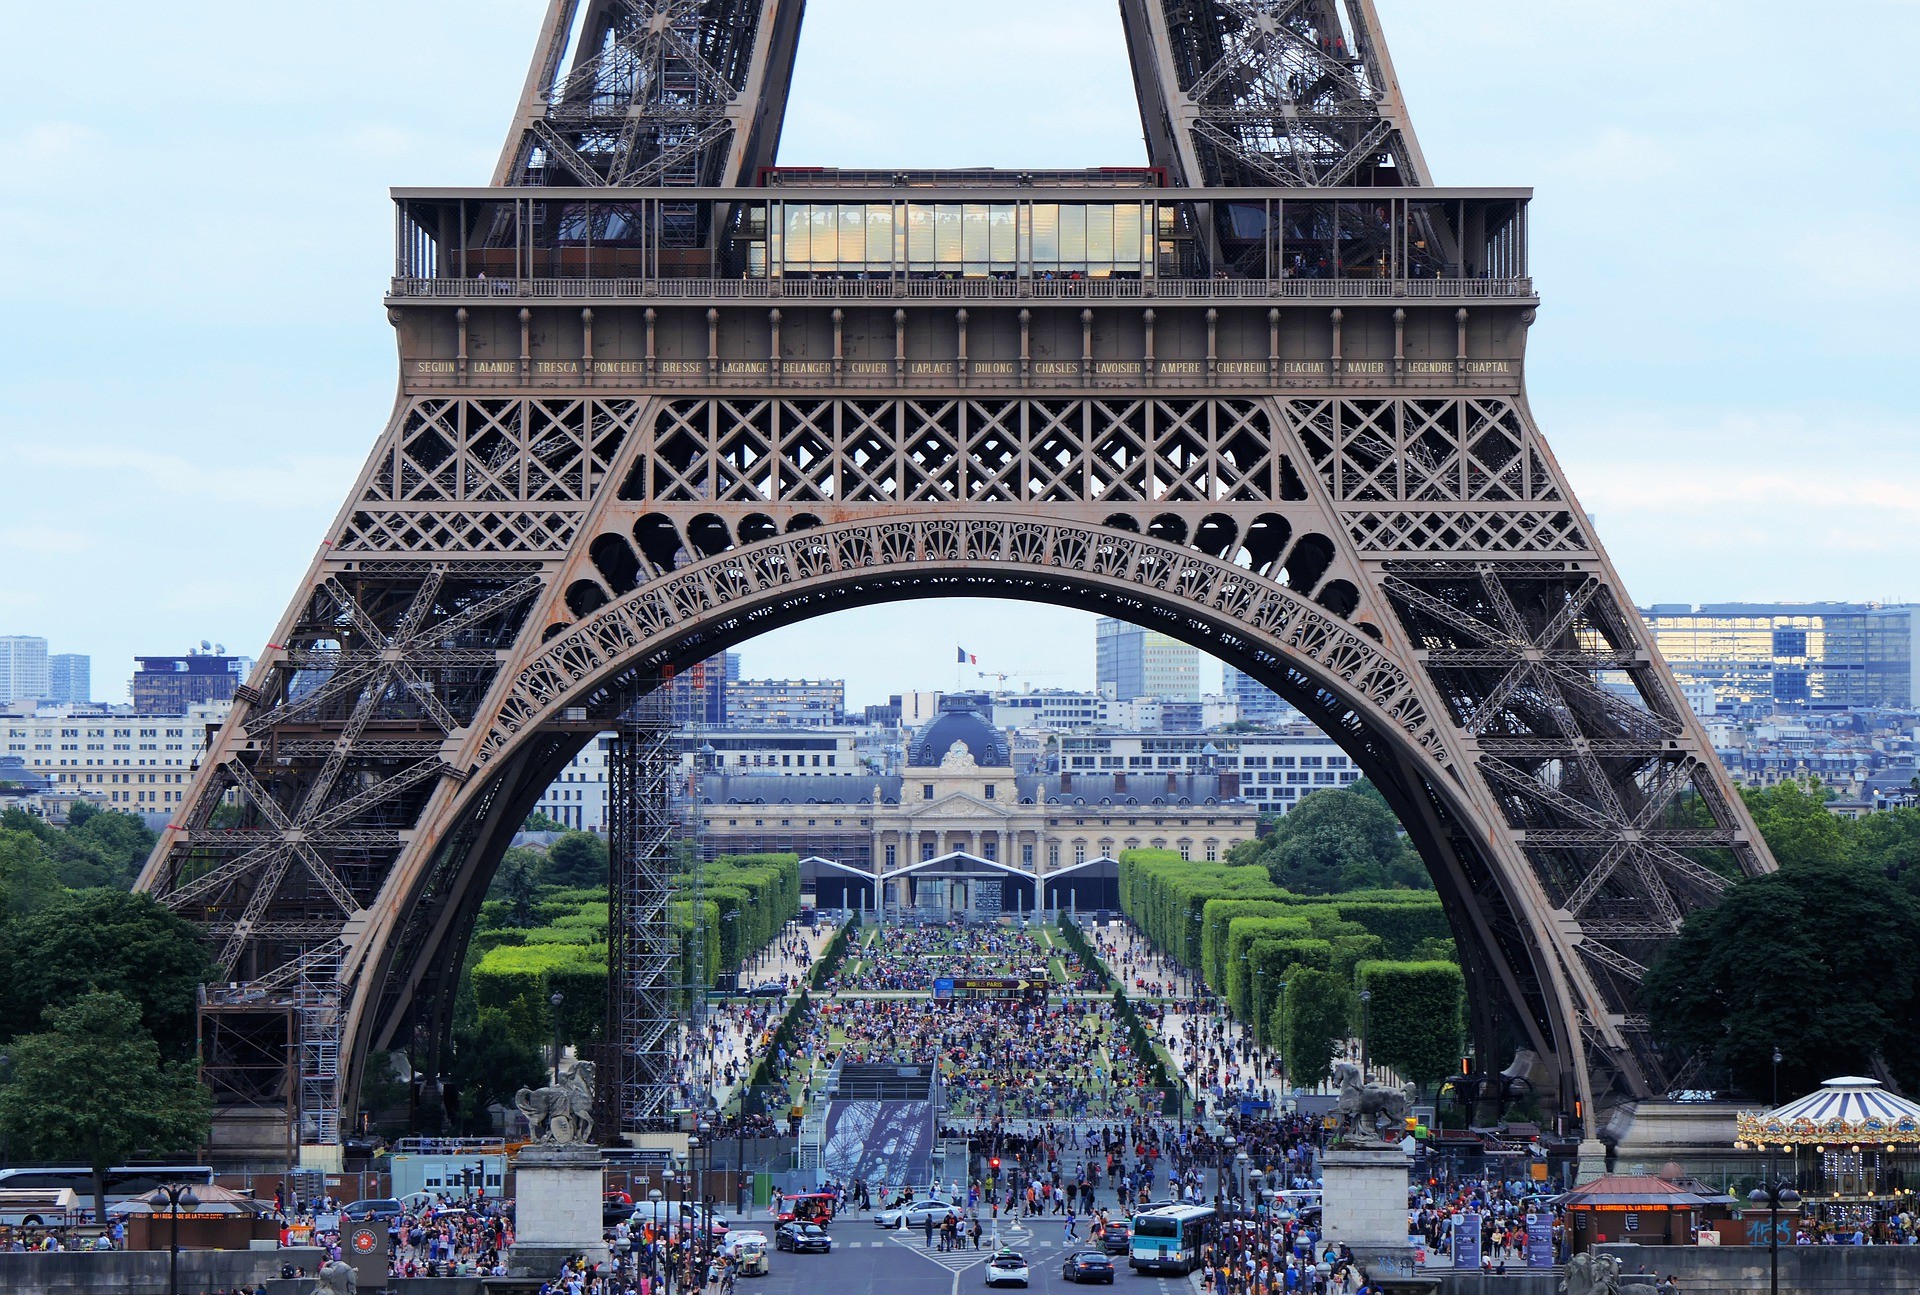 Jegy az Eiffel-toronyba - Találja meg a legolcsóbb árat